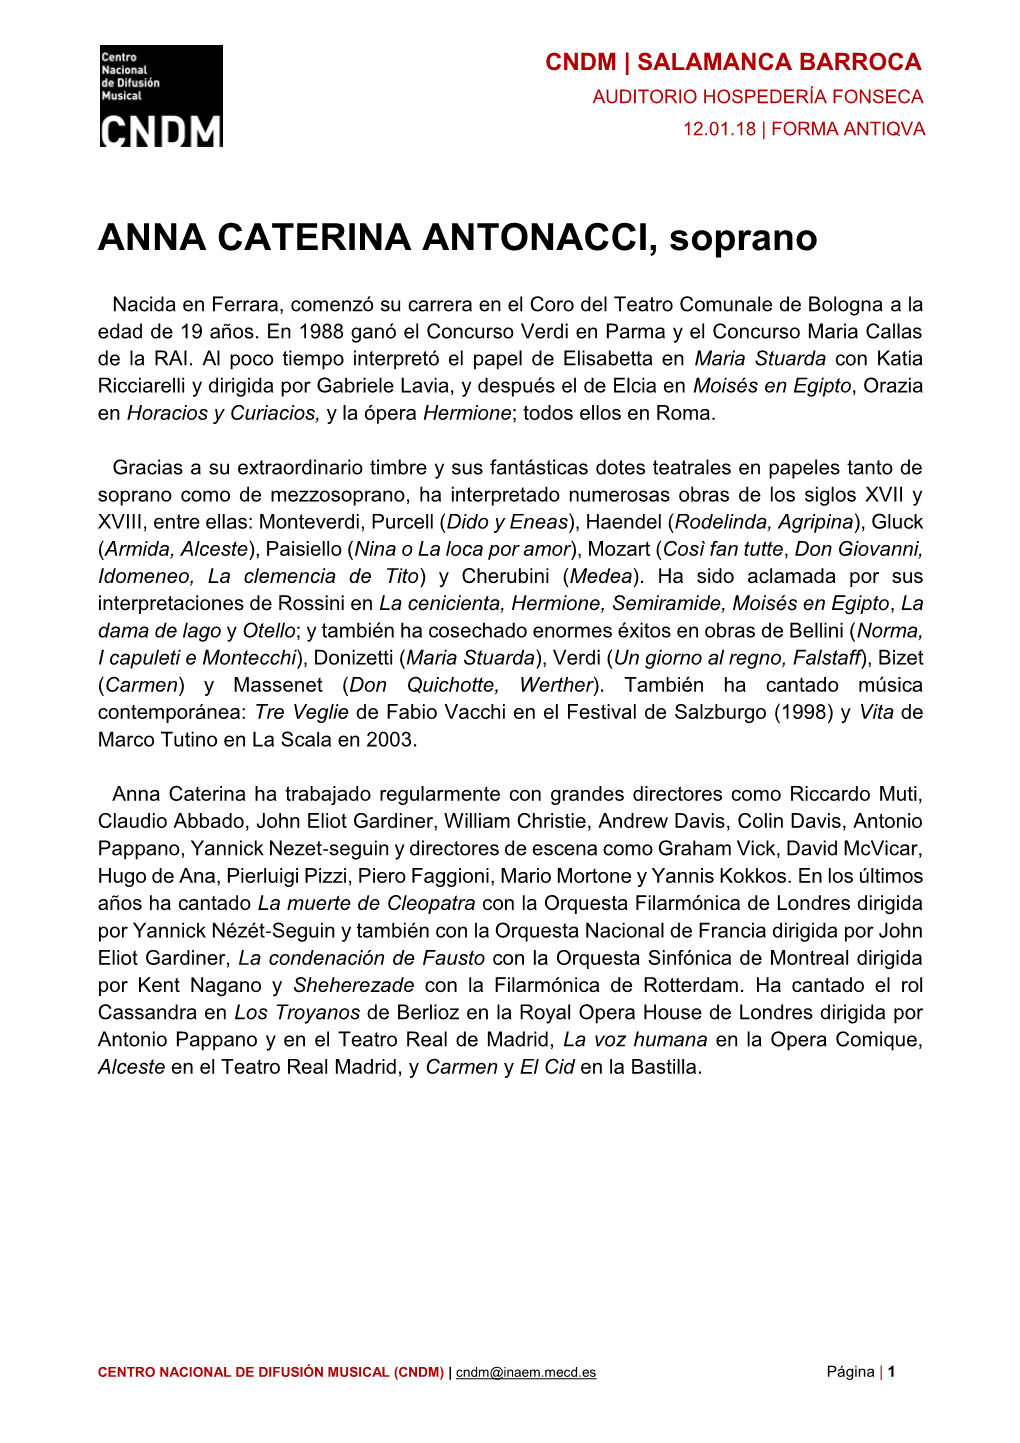 ANNA CATERINA ANTONACCI, Soprano